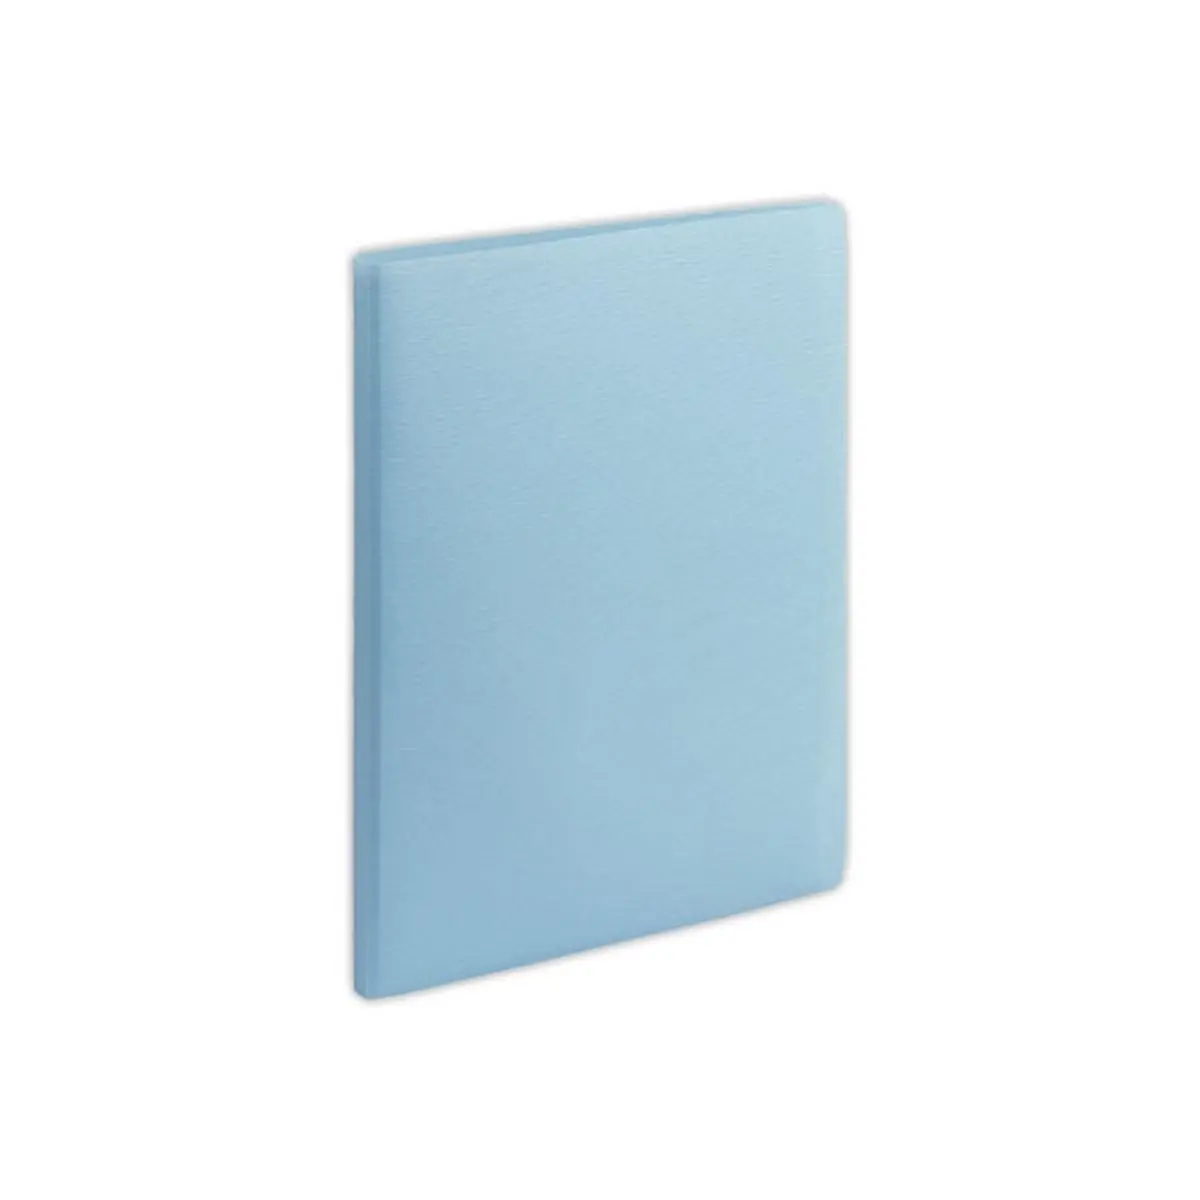 Protège-documents - A4 - 60 poches - bleu clair - FIDUCIAL photo du produit